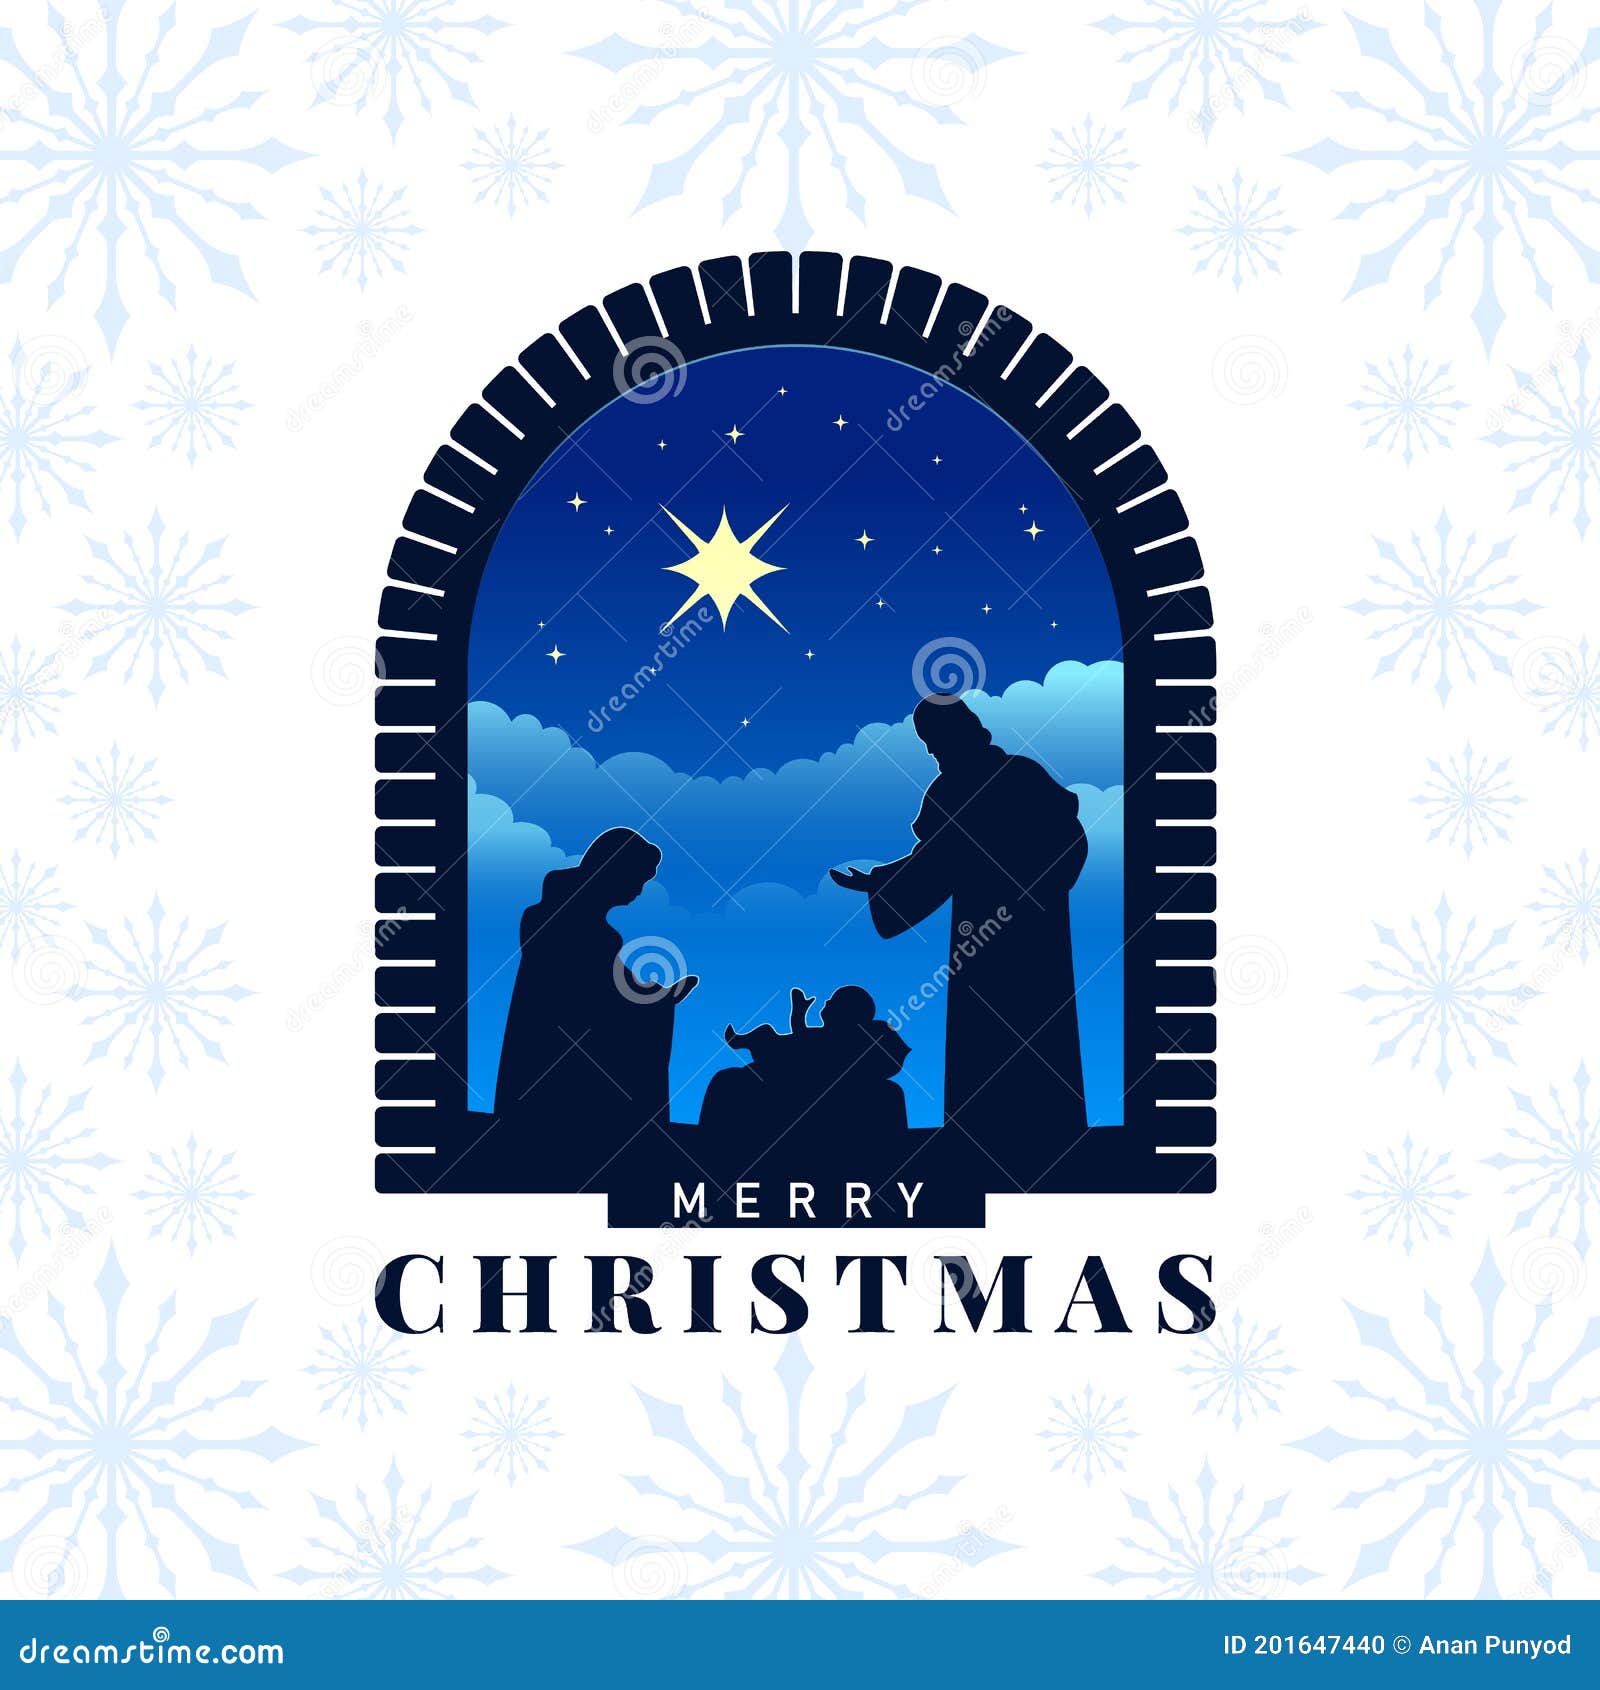 Feliz Natal, O Nascimento De Jesus Banner Com Natividade Da Cena De Jesus E  Luz Estelar Em Uma Rocha De Pedra Na Textura De Neve Ilustração do Vetor -  Ilustração de arco,